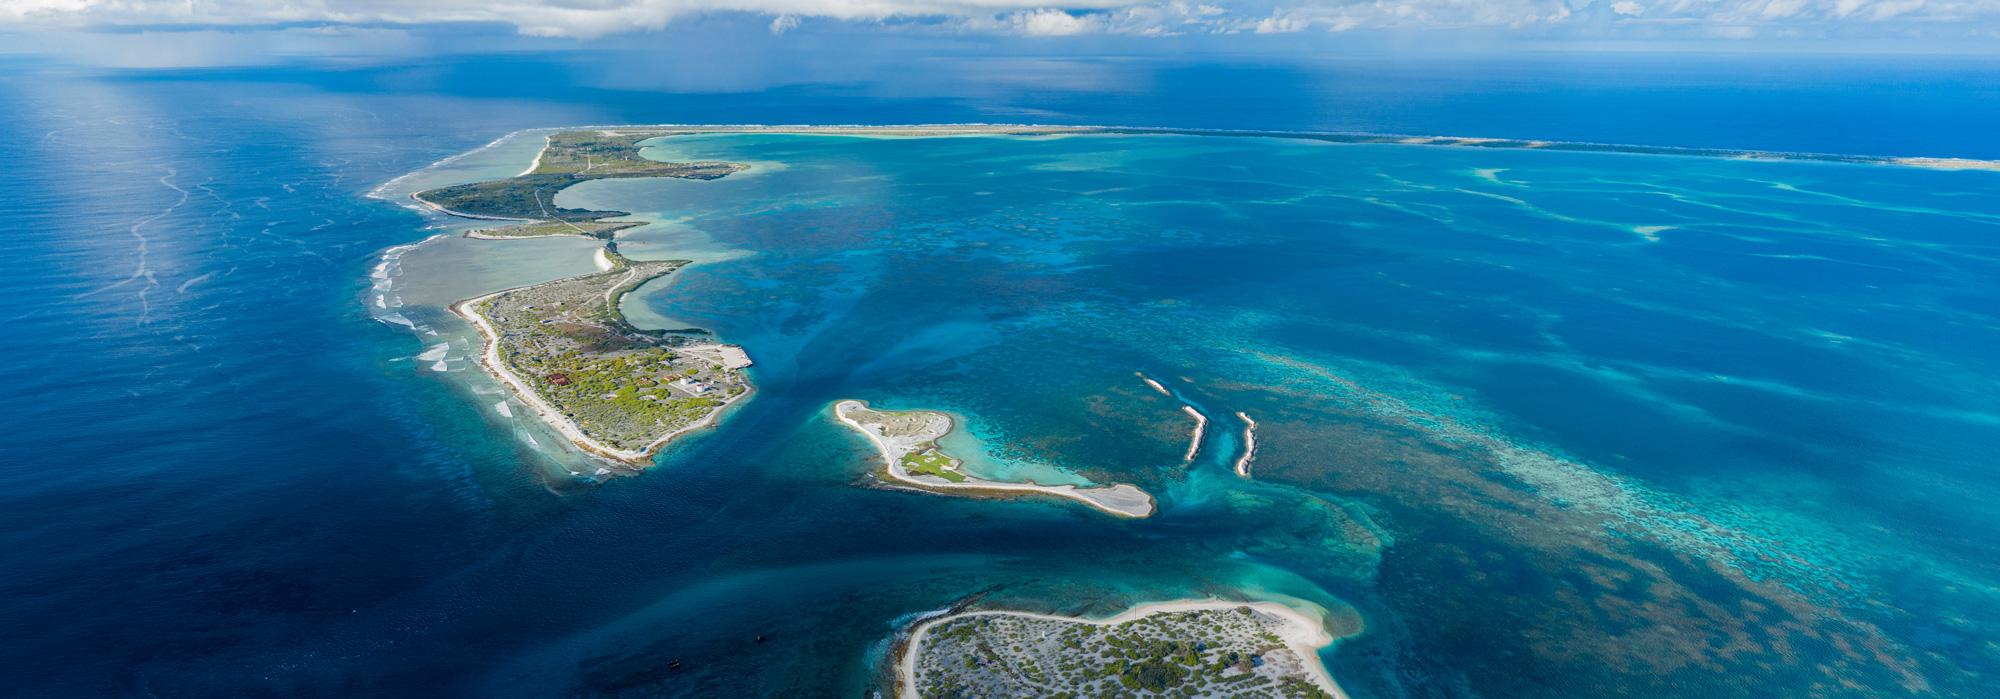 Aerial Panorama of Kanton Atoll in Kiribati